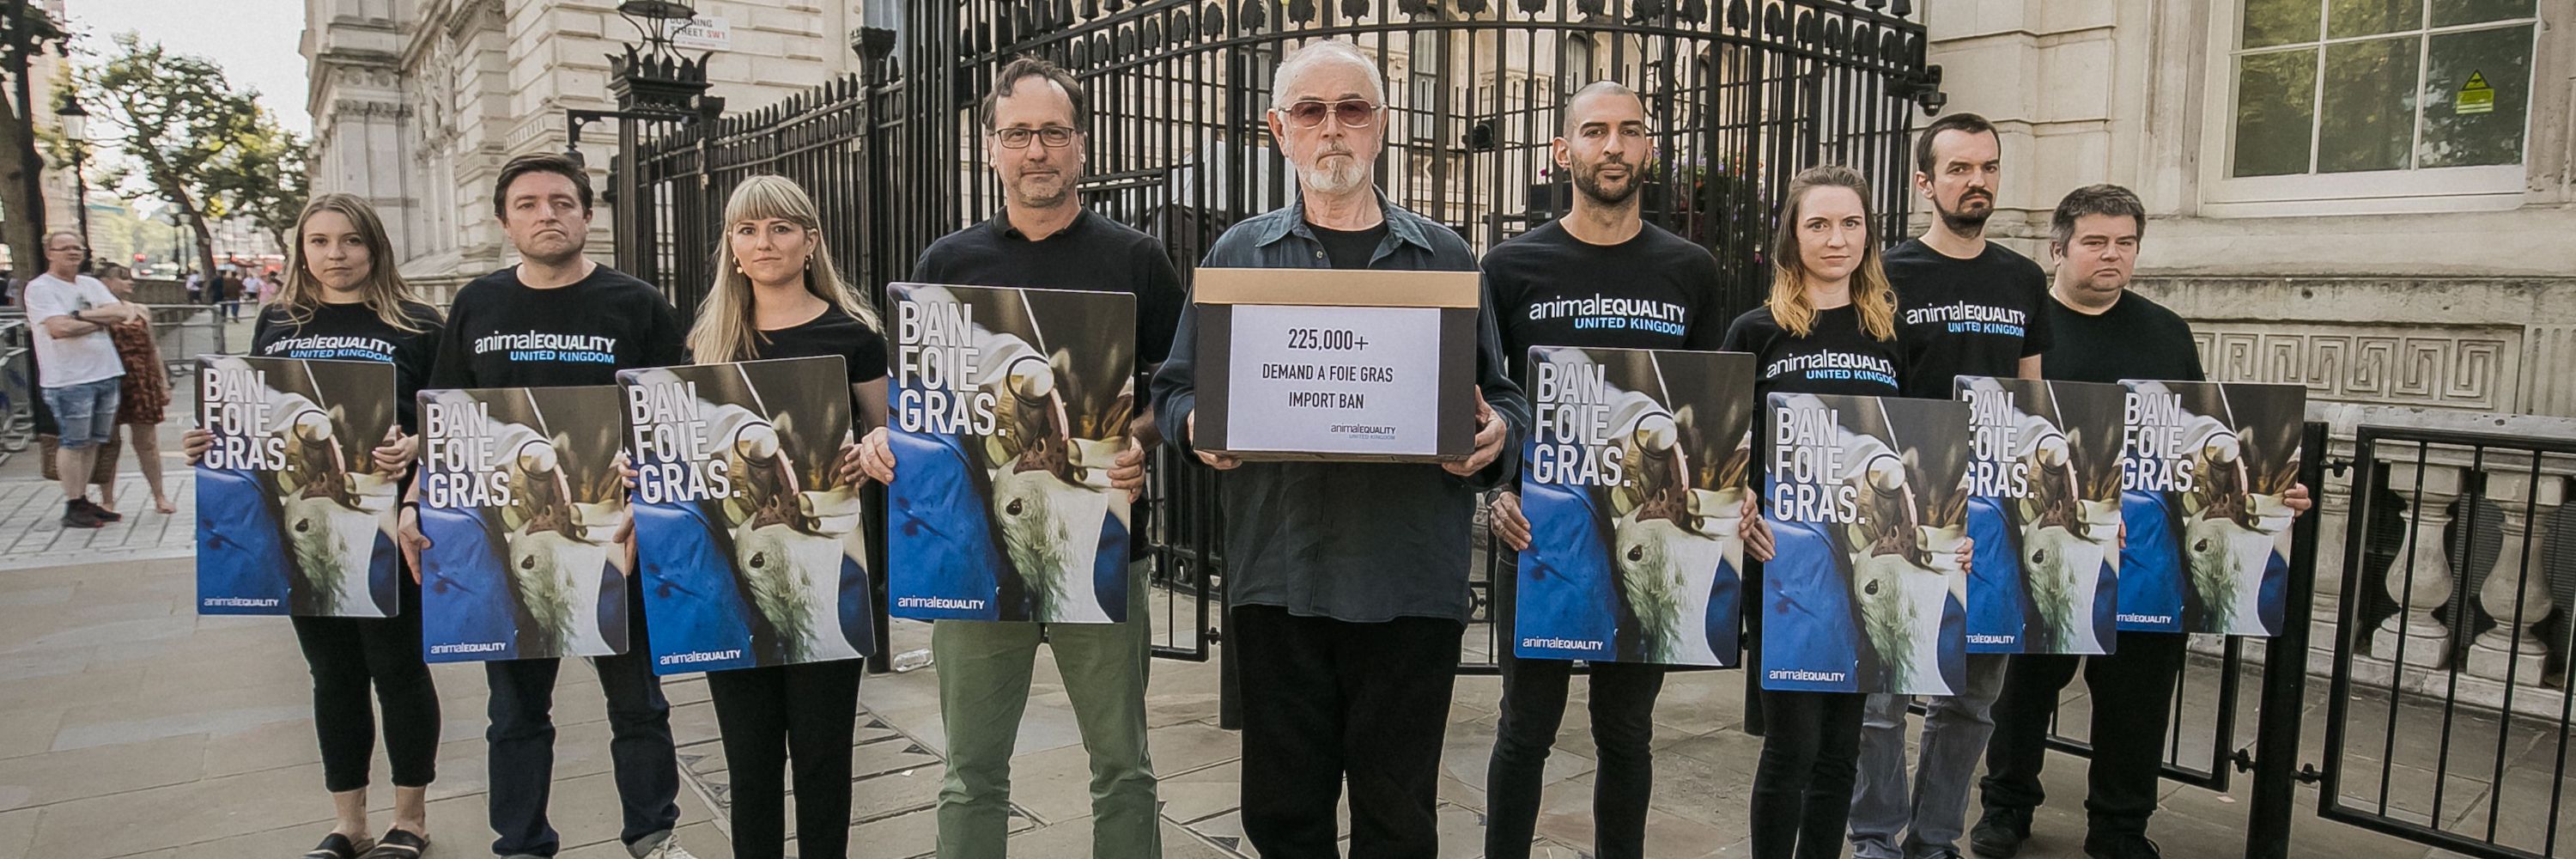 Protesto contra o foie gras no Reino Unido